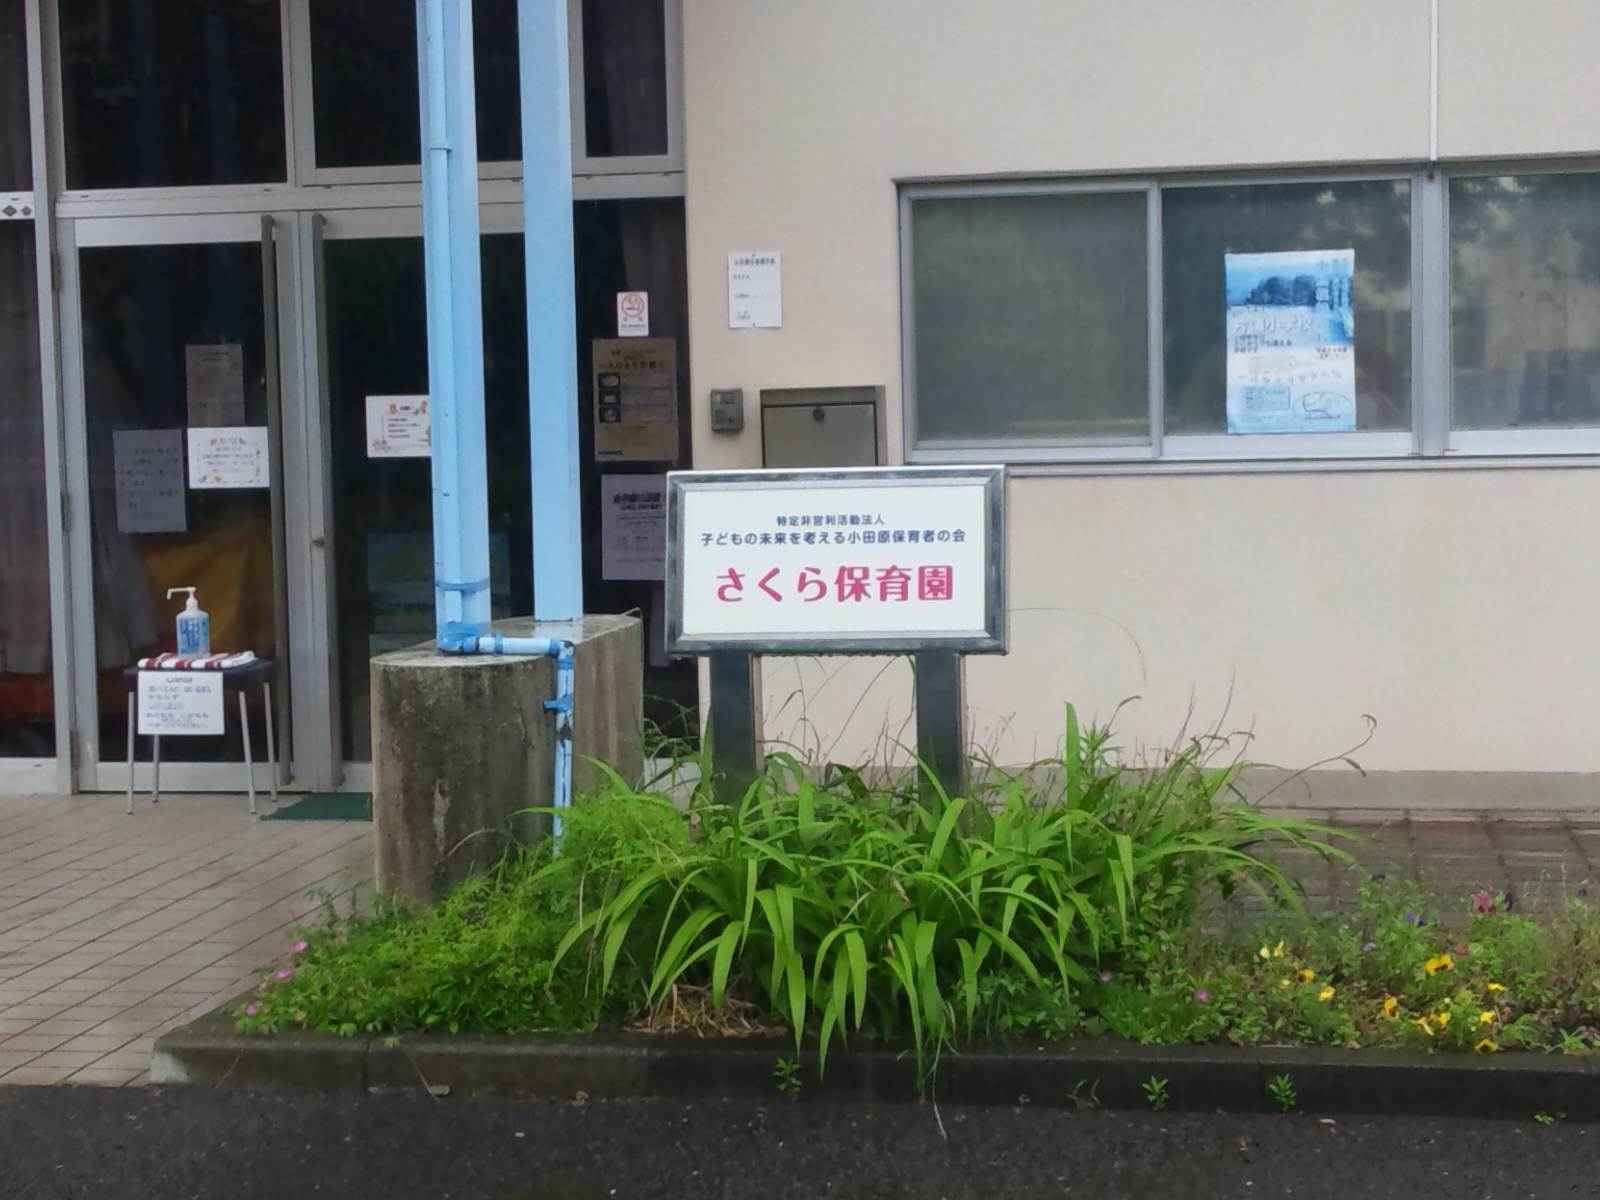 kindergarten ・ Nursery. Sakura nursery school (kindergarten ・ 1150m to the nursery)